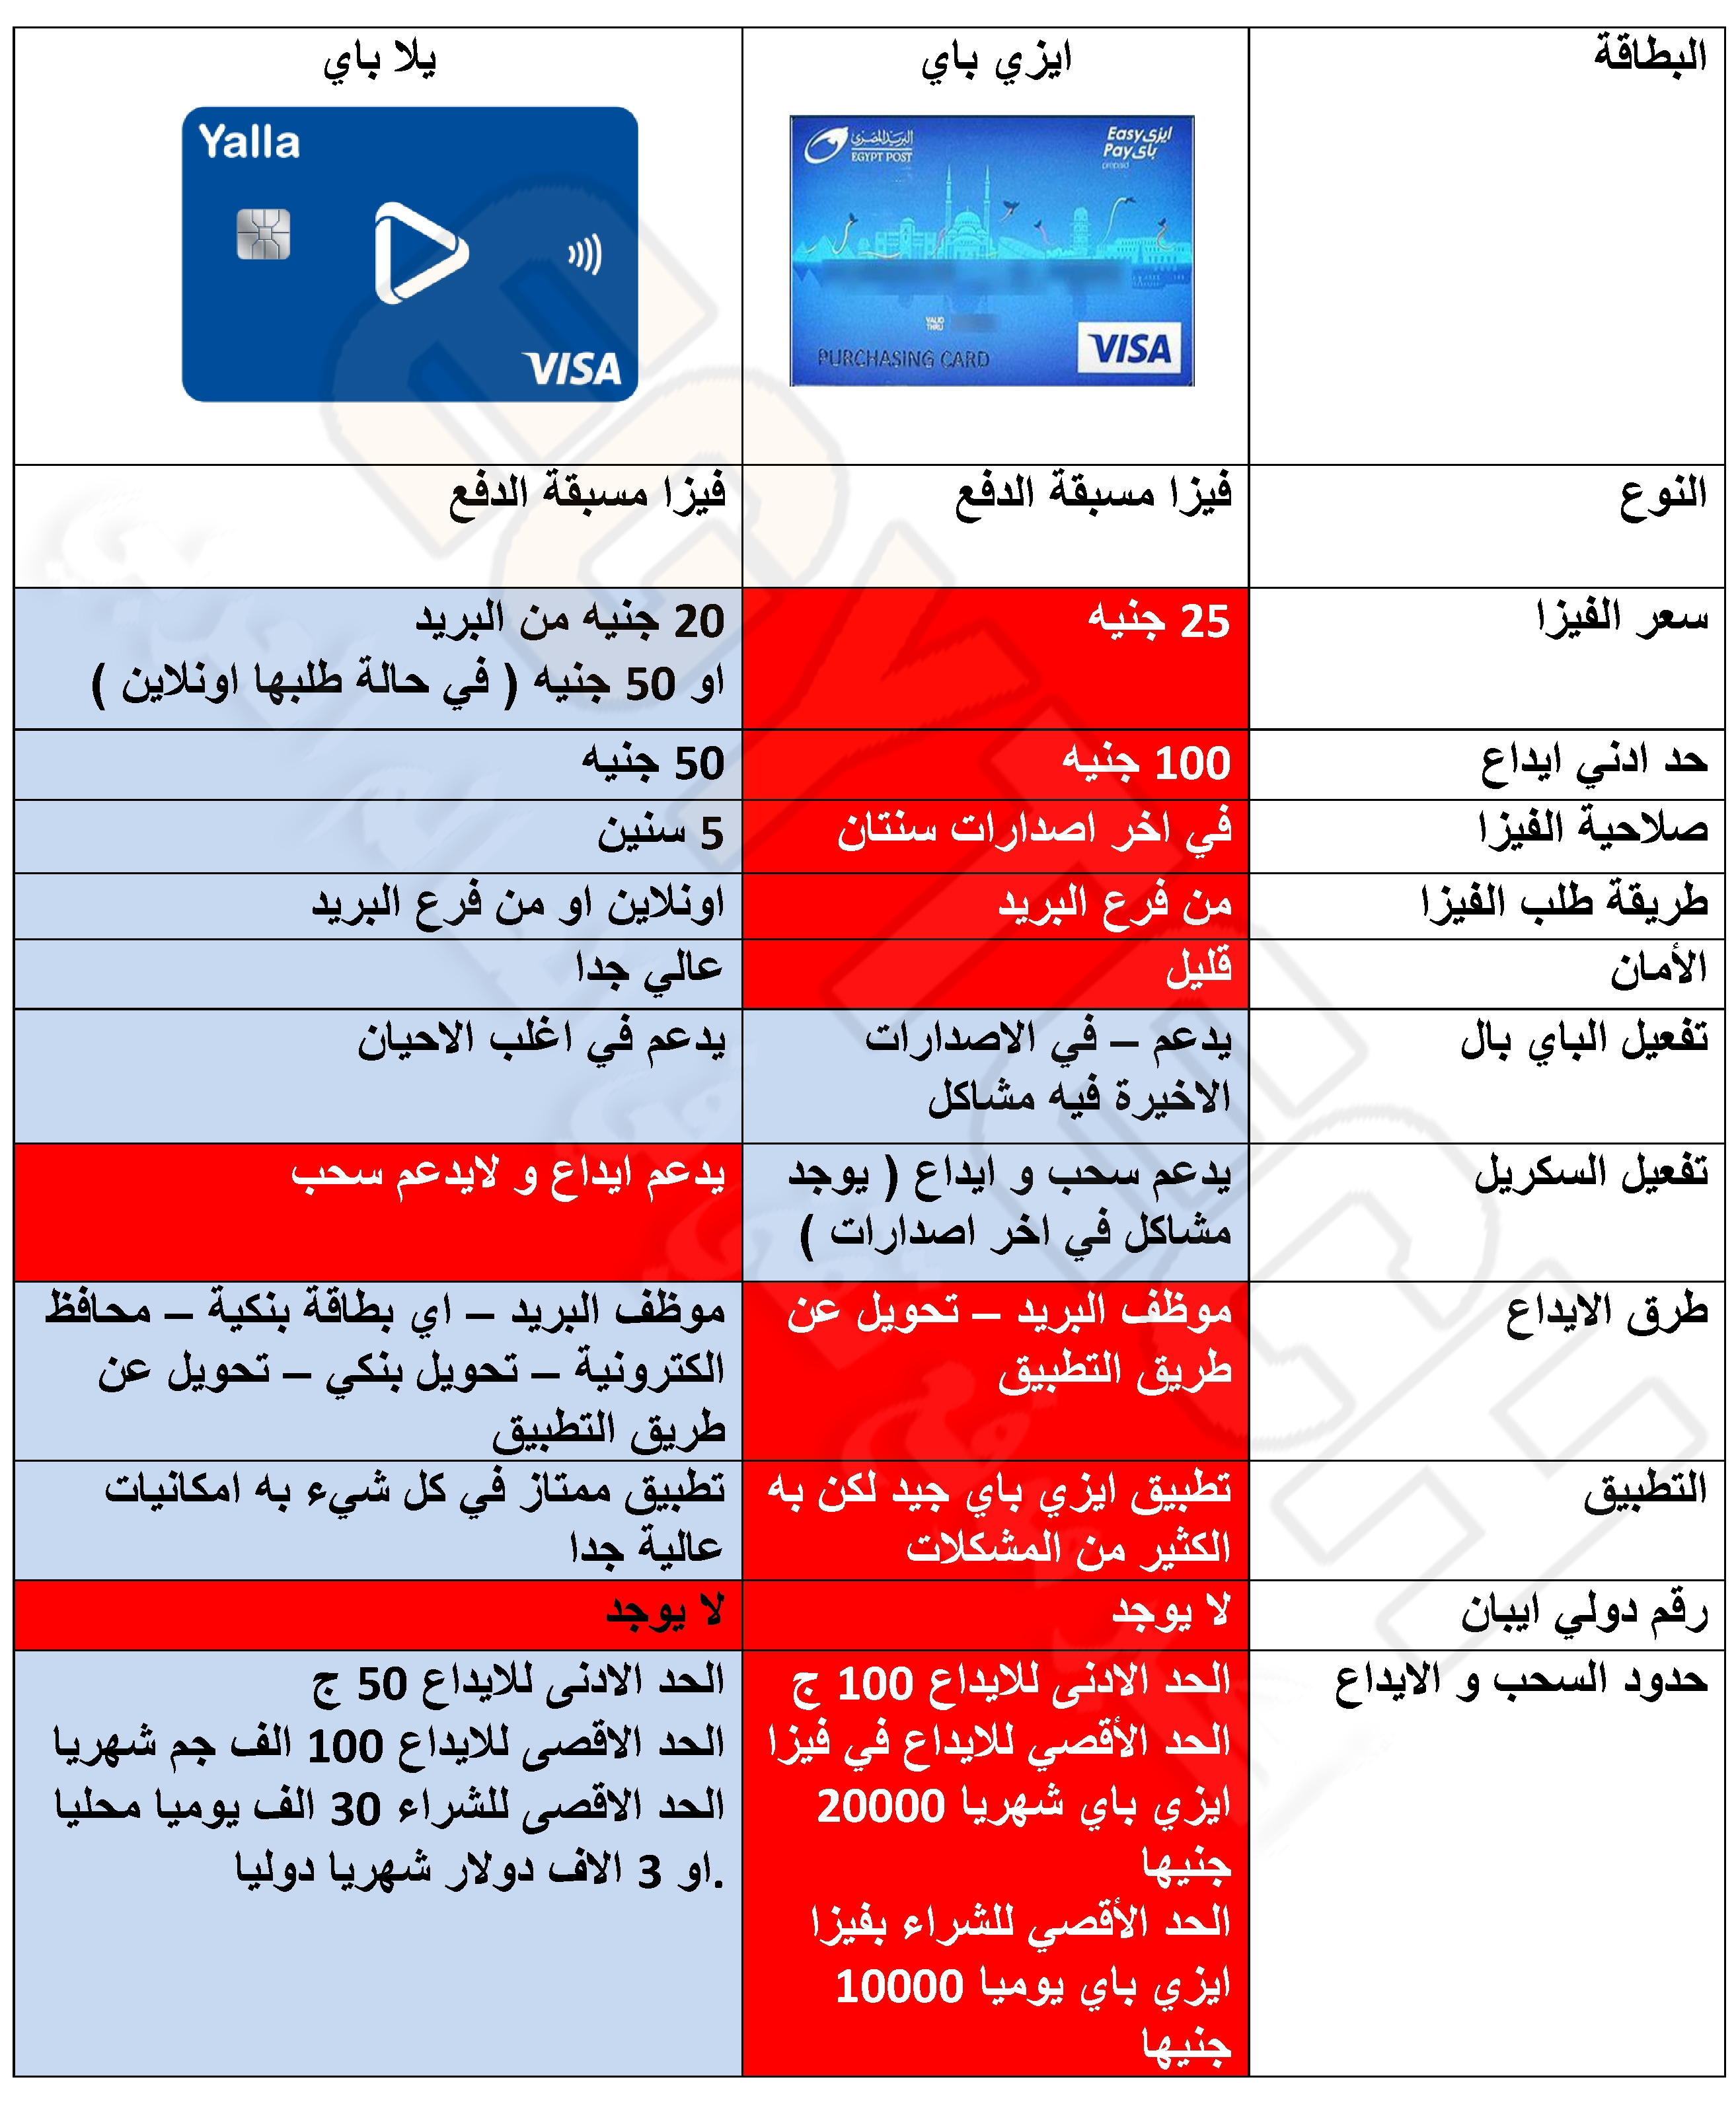 حصريا مقارنة كاملة بين ايزي باي و يلا باي البريد المصري - المميزات و العيوب